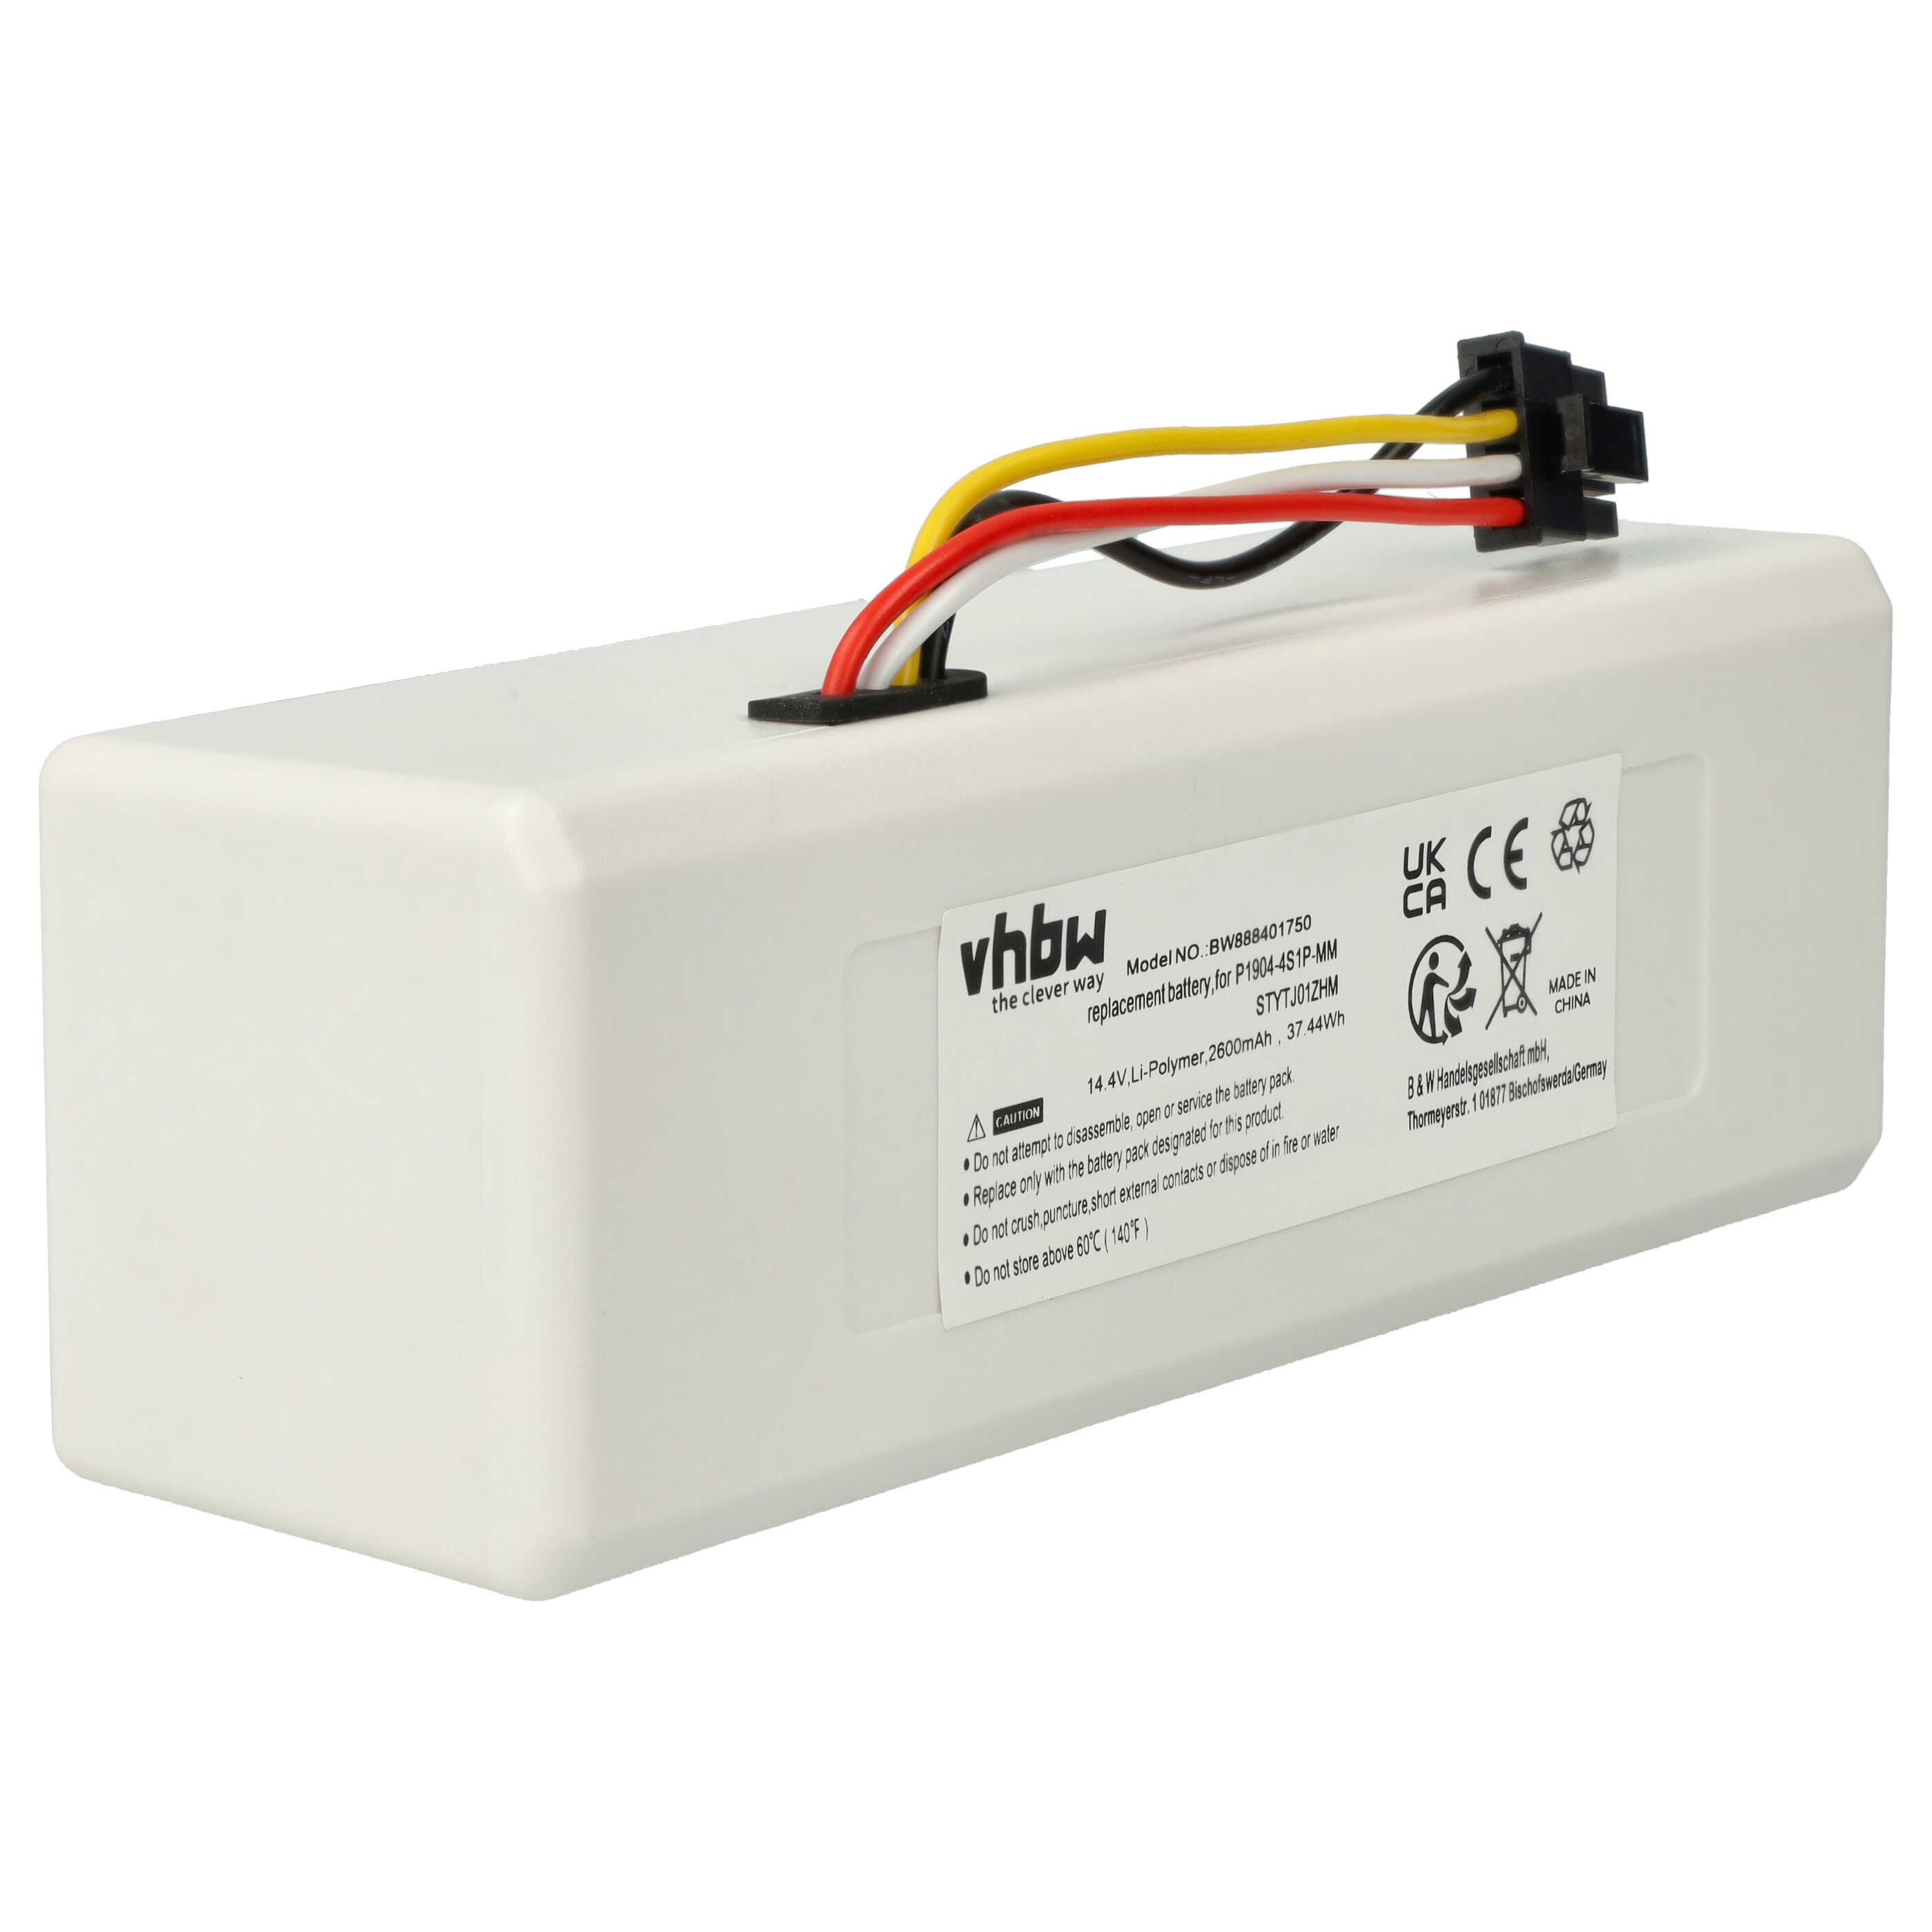 Batterie remplace Dreame P1904-4S1P-MM pour robot aspirateur - 2600mAh 14,4V Li-ion